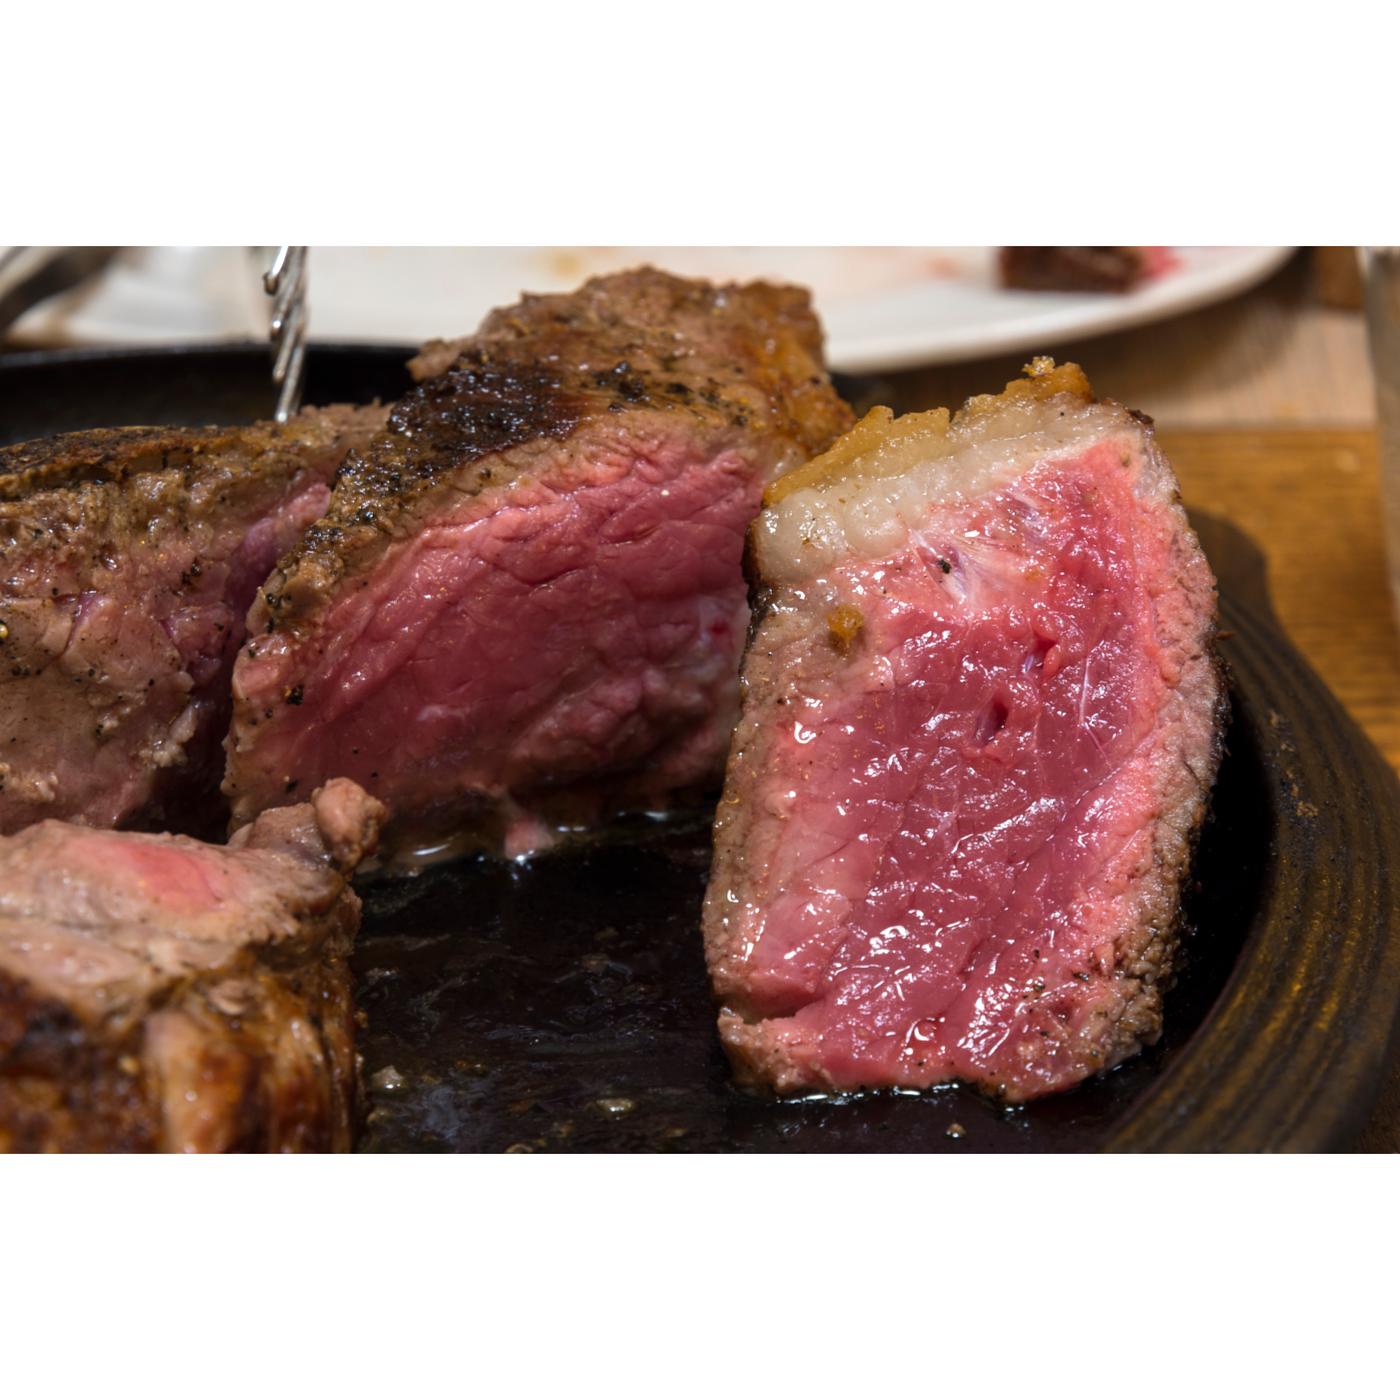 USDA Prime Bone-In New York Strip Steak